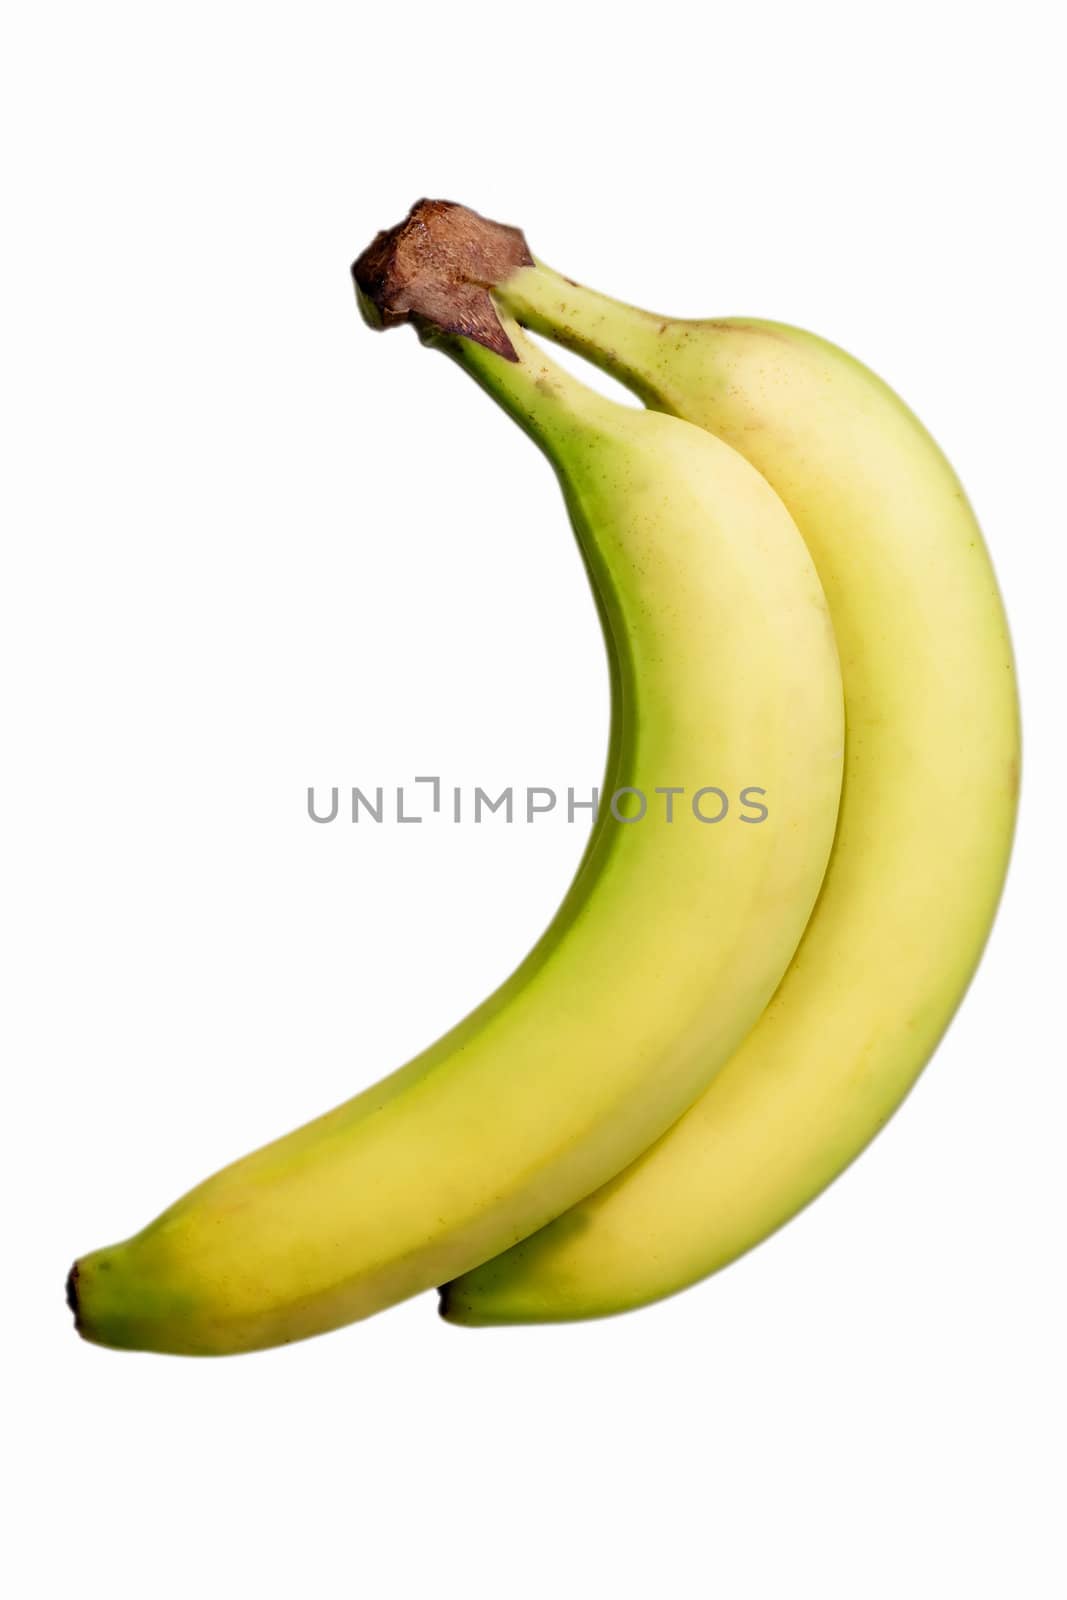 Bananas isolated on white background